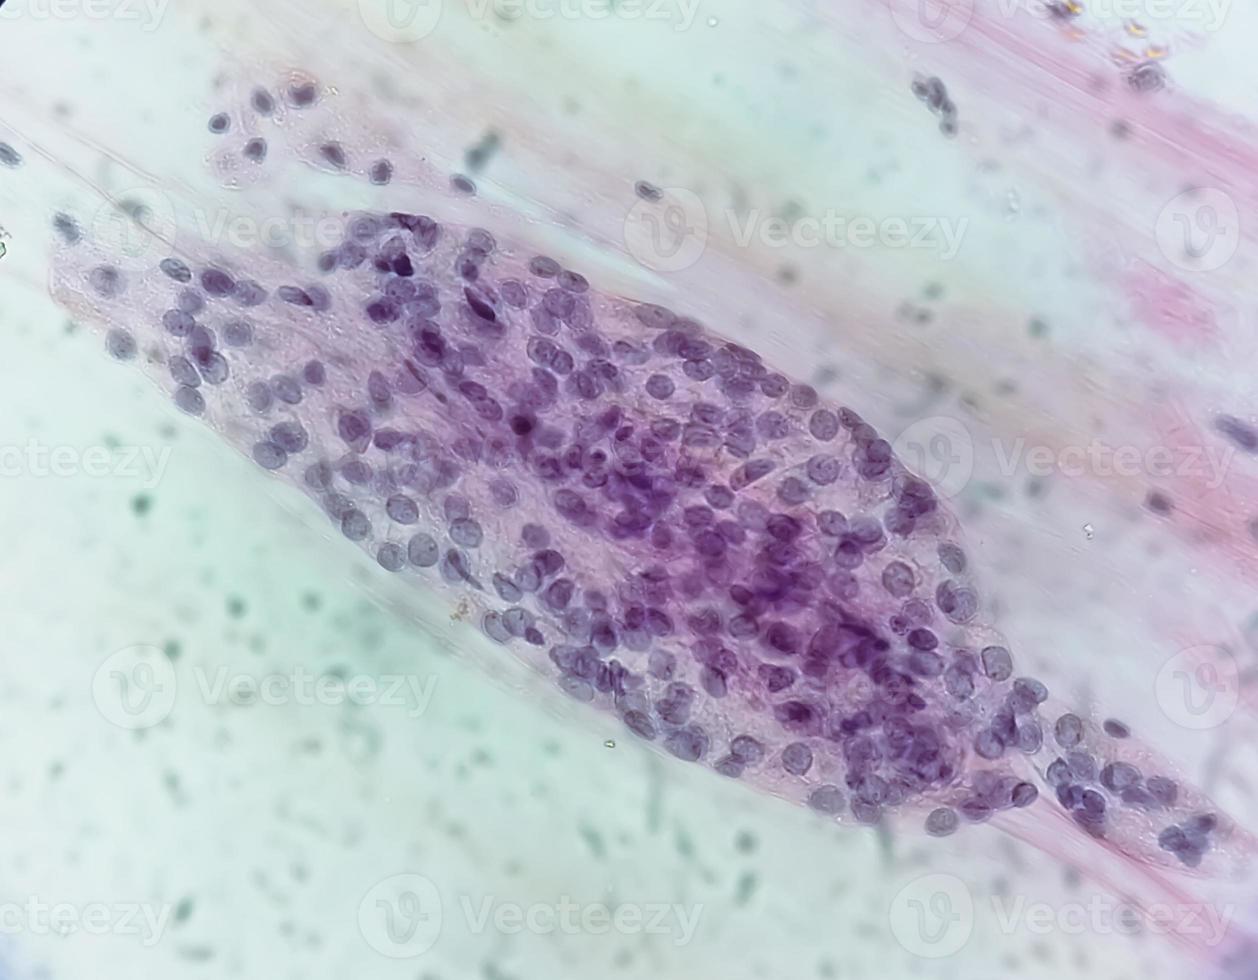 vue microscopique de trichomonas vaginalis dans un frottis vaginal avec peu de cellules inflammatoires aiguës. photo